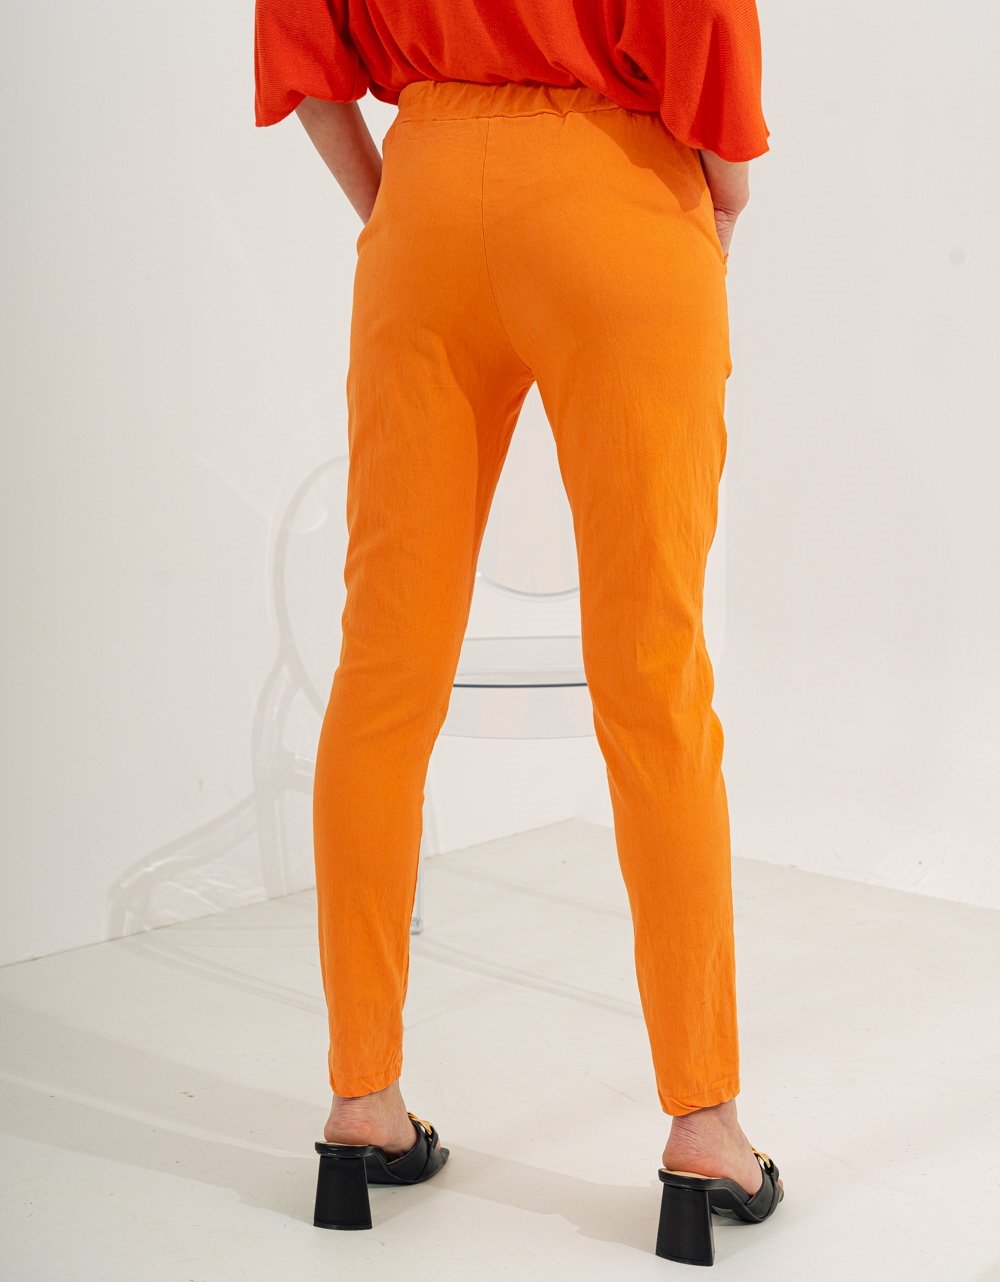 Εικόνα από Παντελόνι ελαστικό με λάστιχο στη μέση Πορτοκαλί